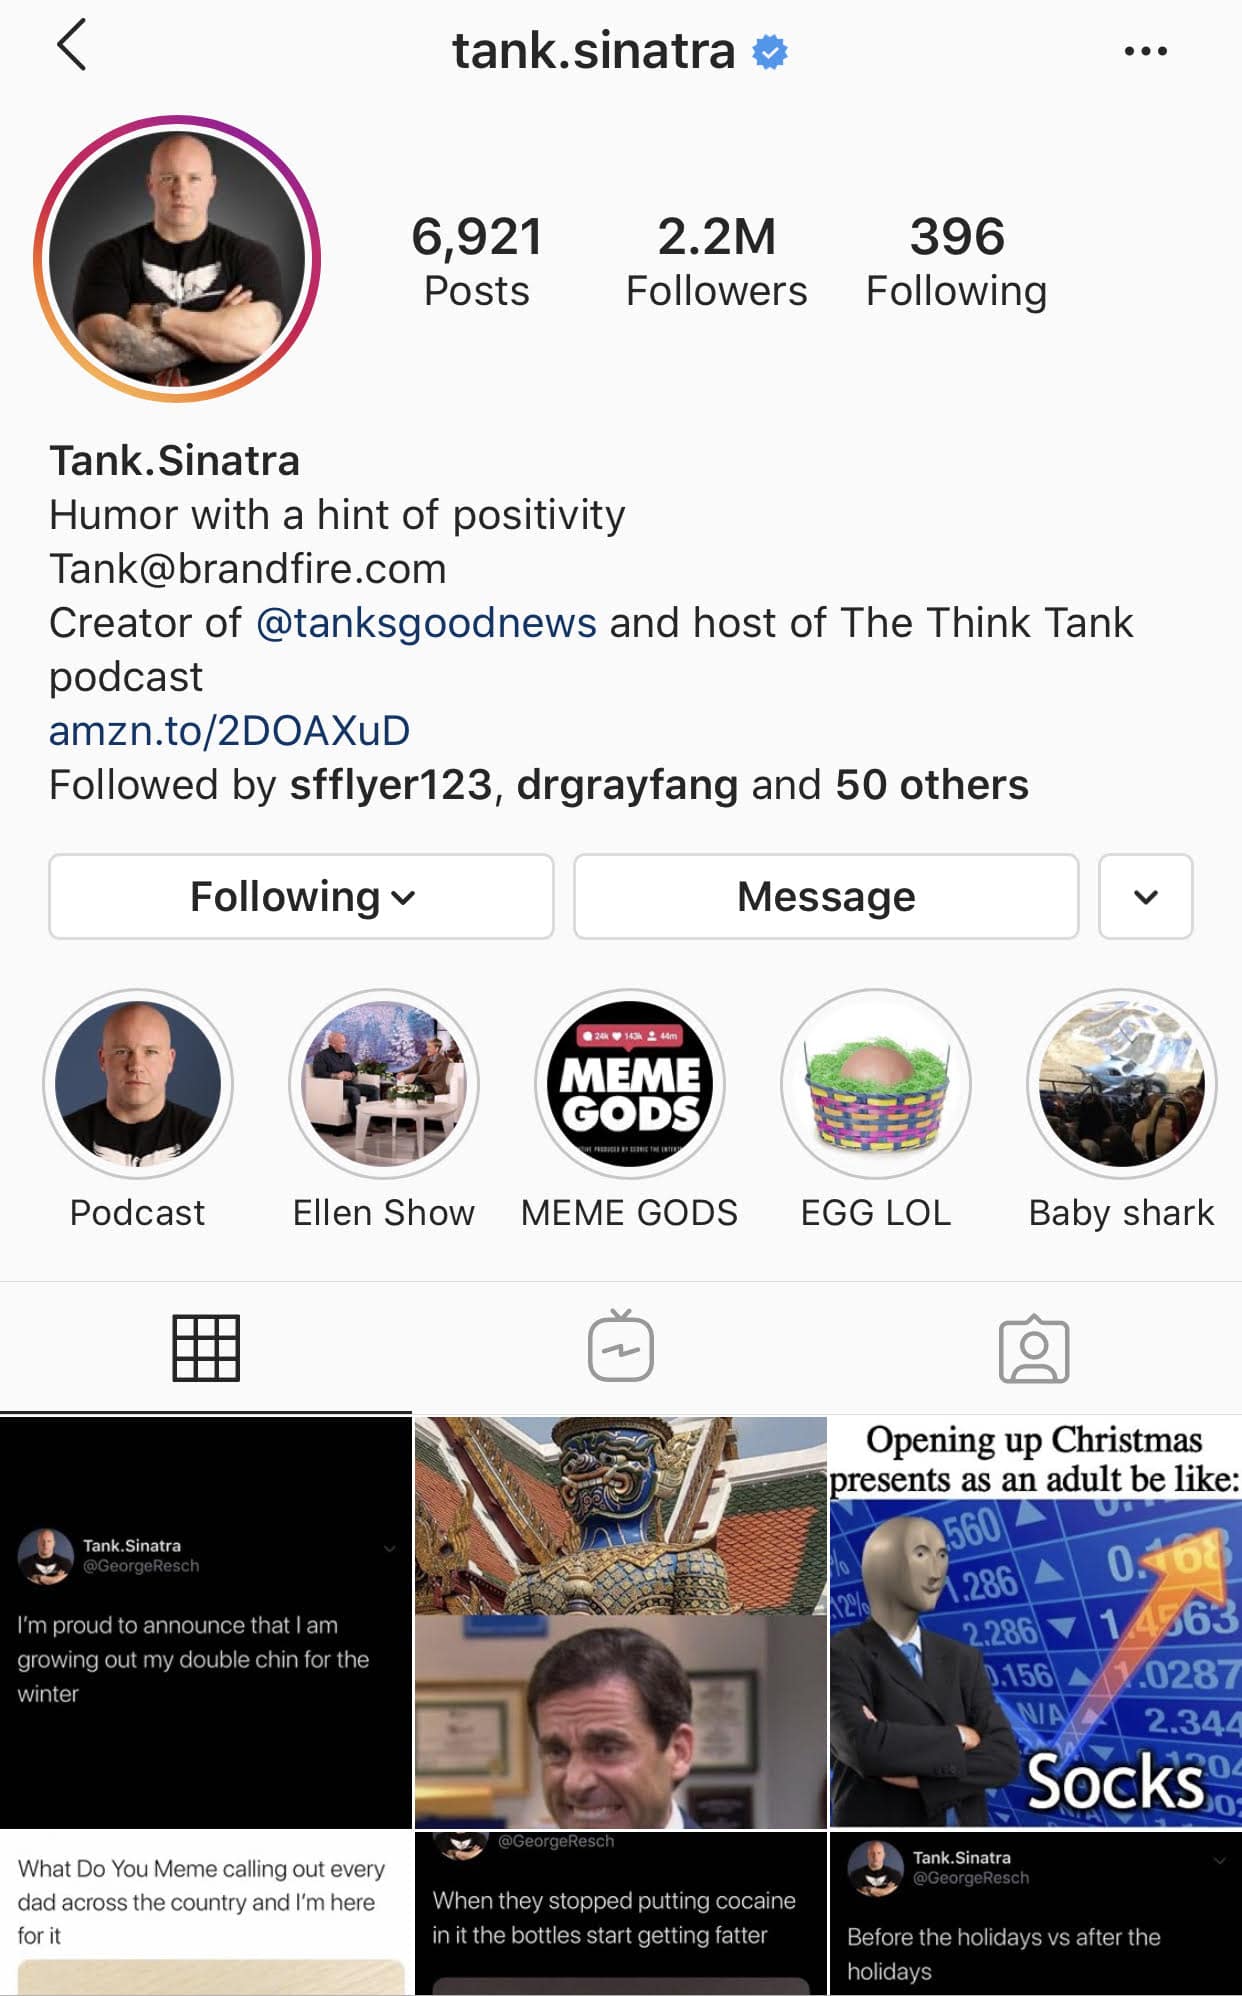 15 Instagram Accounts To Follow In 2020: Celebrities & Brands